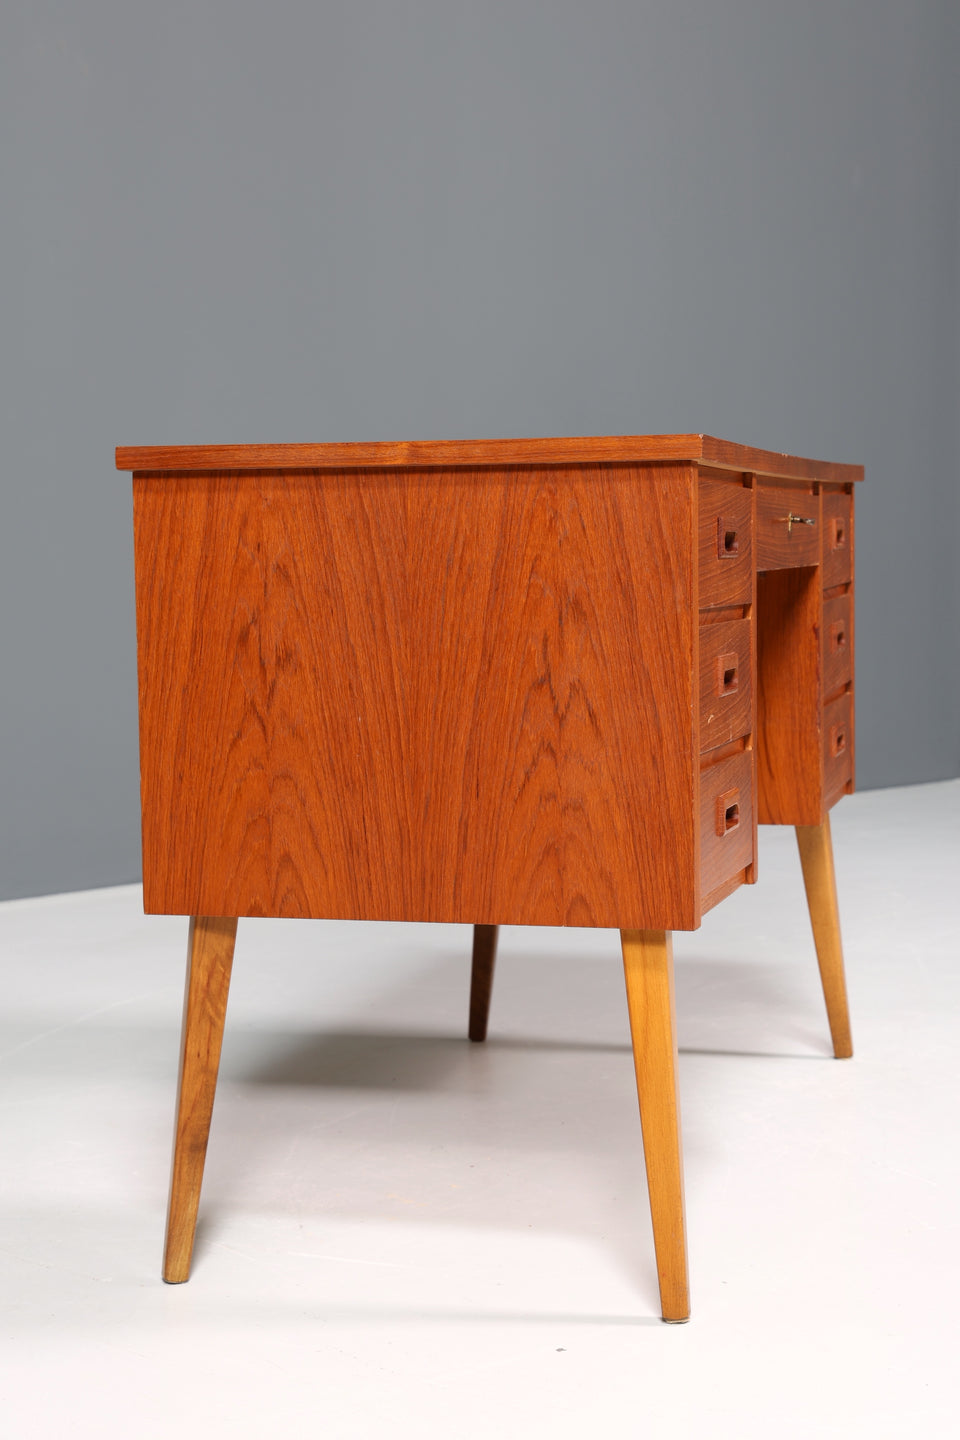 Wunderschöner Mid Century Schreibtisch "Made in Denmark" Teak Holz Bürotisch Danish Design 60s